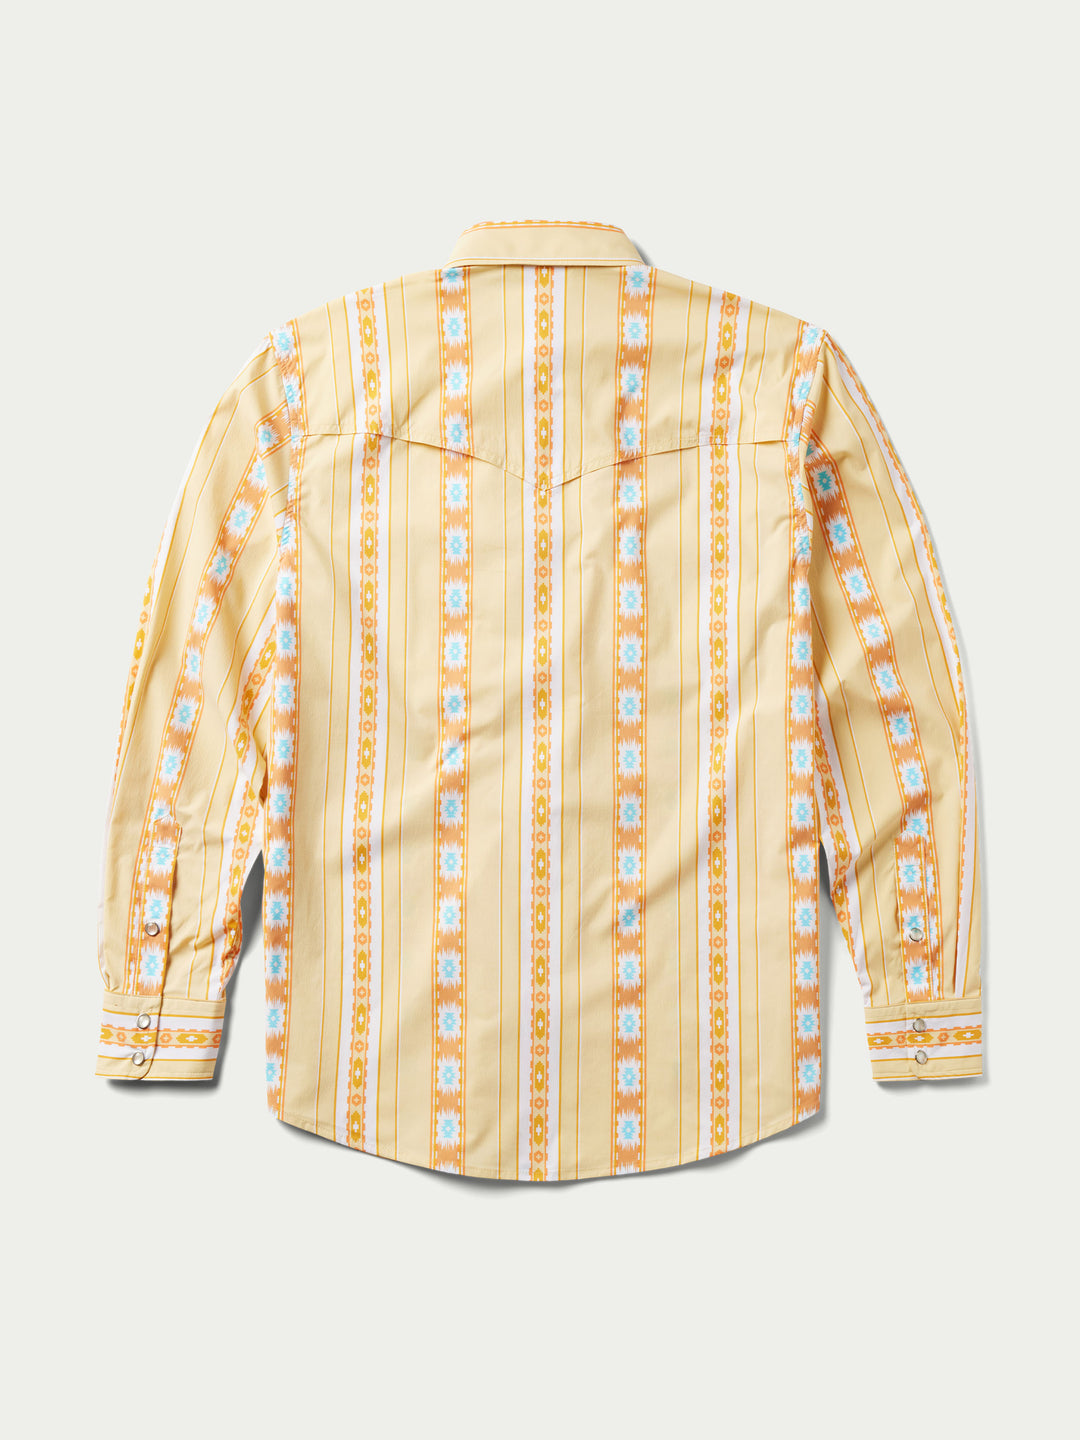 RangeTek Western Guide Snap Shirt - Schaefer Outfitter